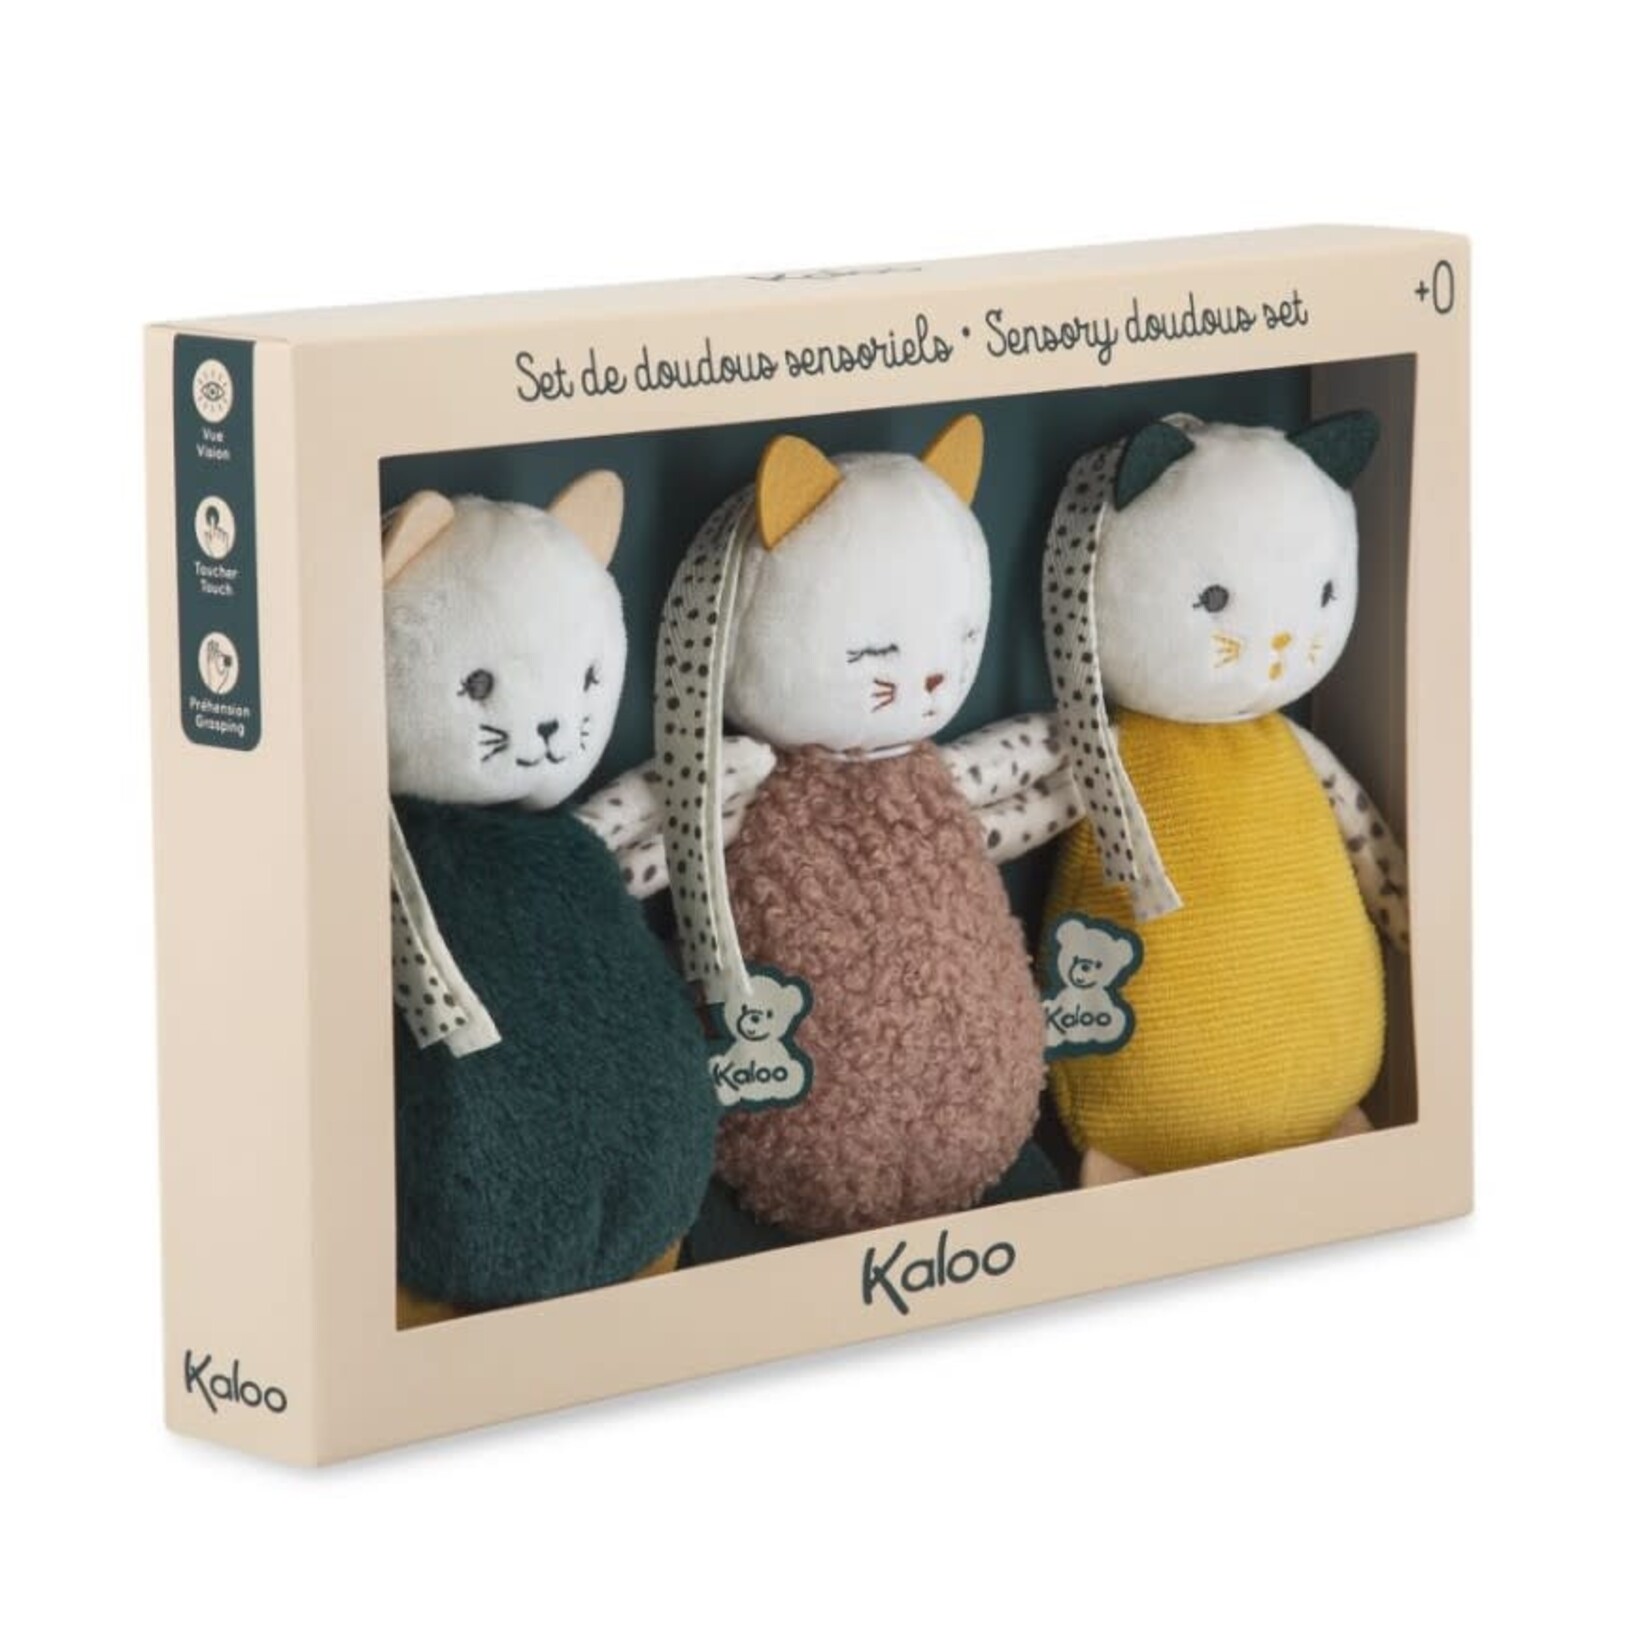 Kaloo KALOO - Cuddly kitties sensory toy for baby (Set of 3)